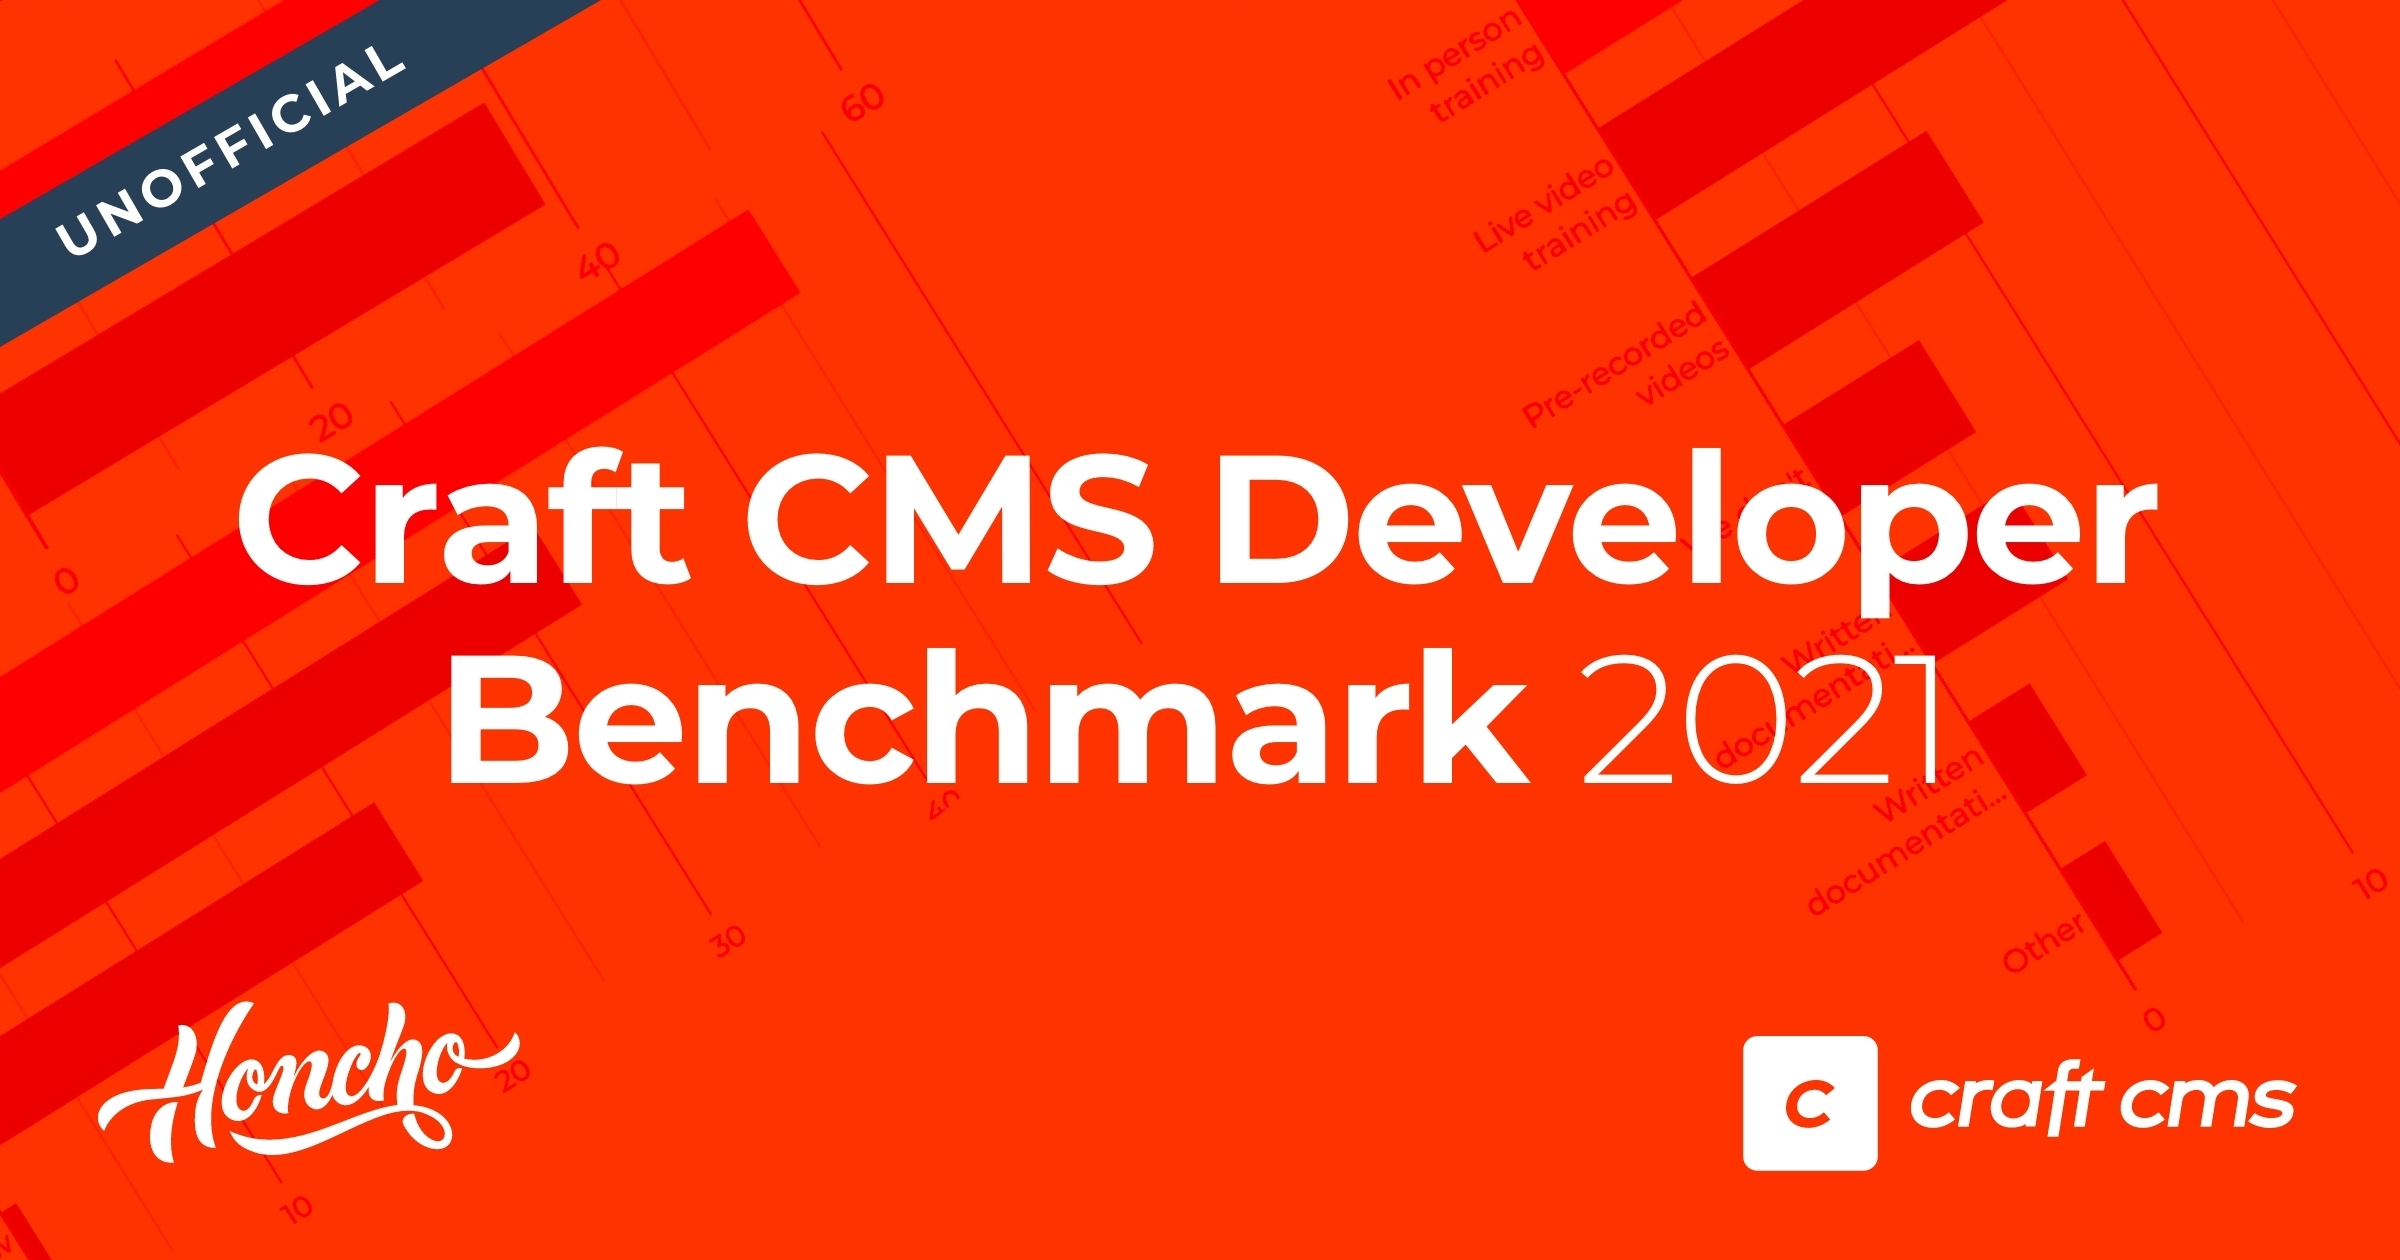 Craft CMS Developer Benchmark 2021 OG